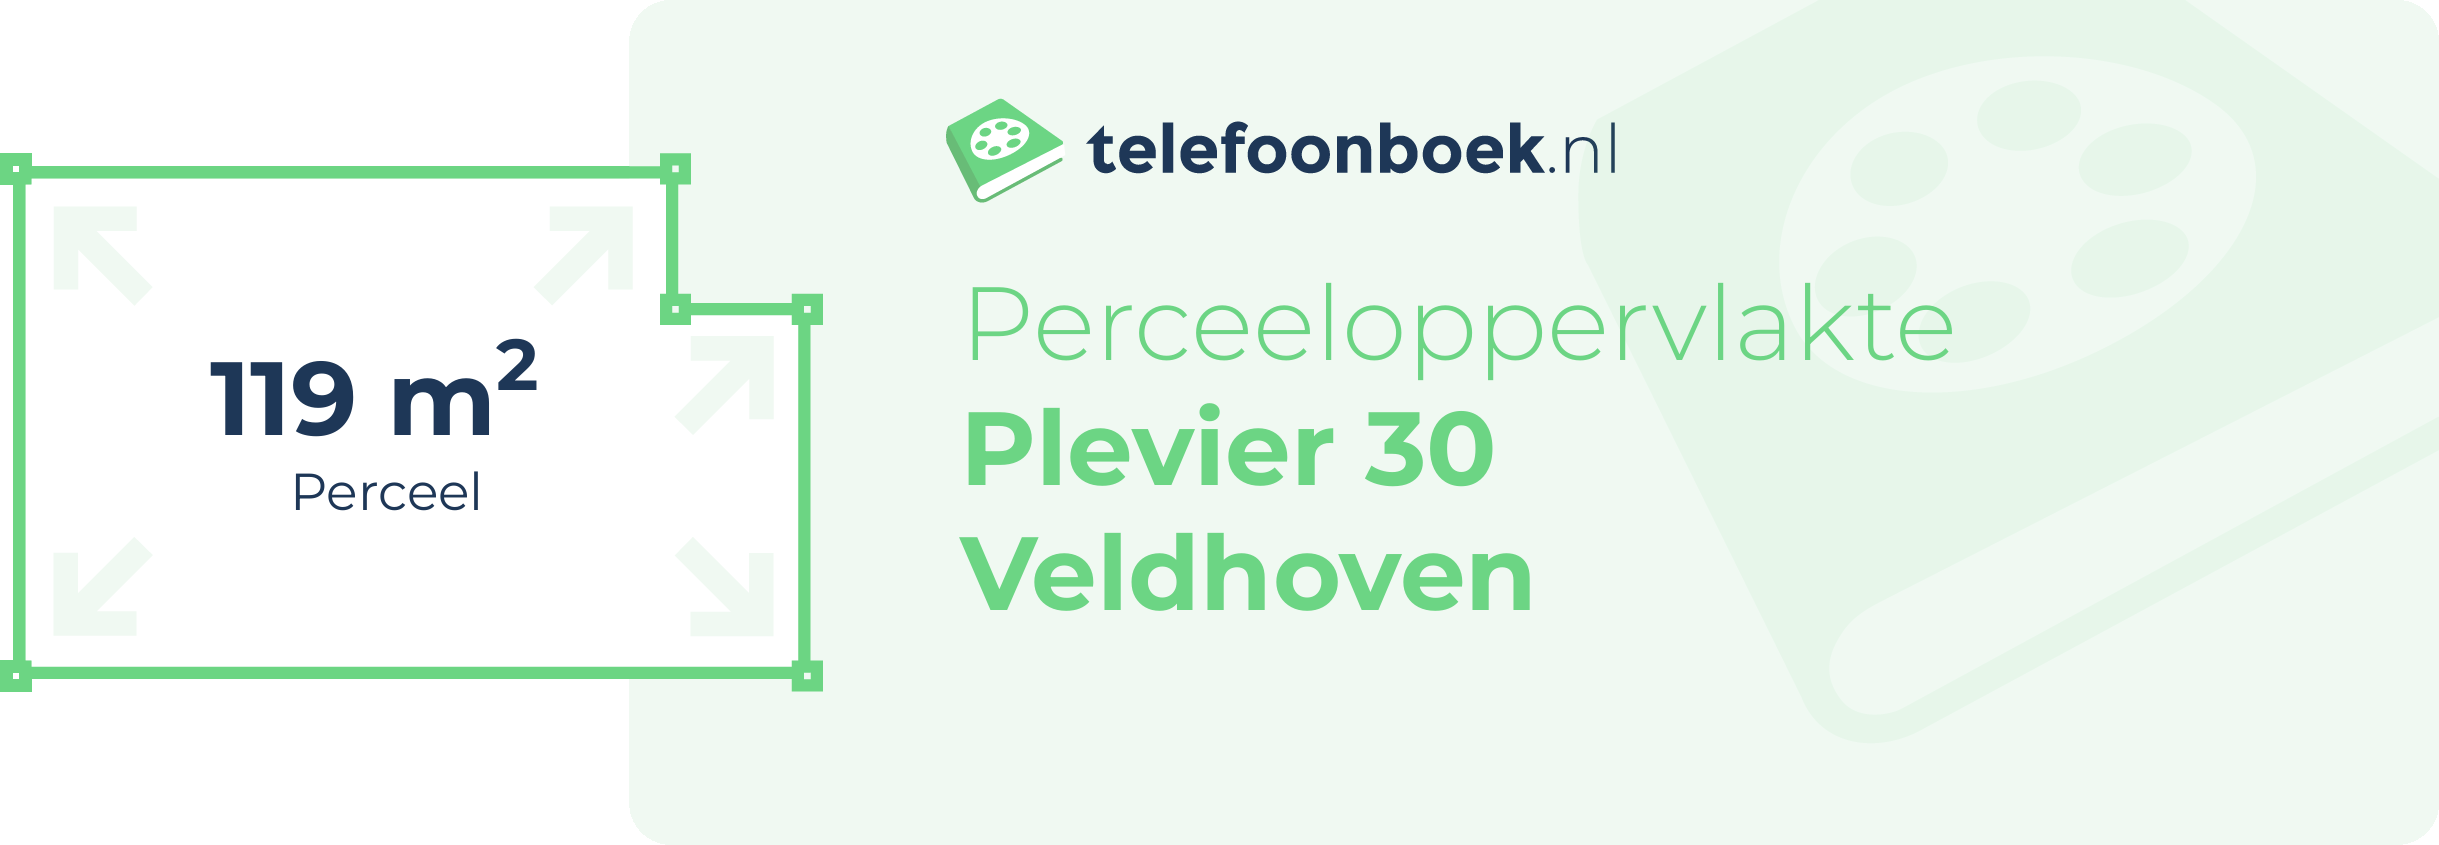 Perceeloppervlakte Plevier 30 Veldhoven